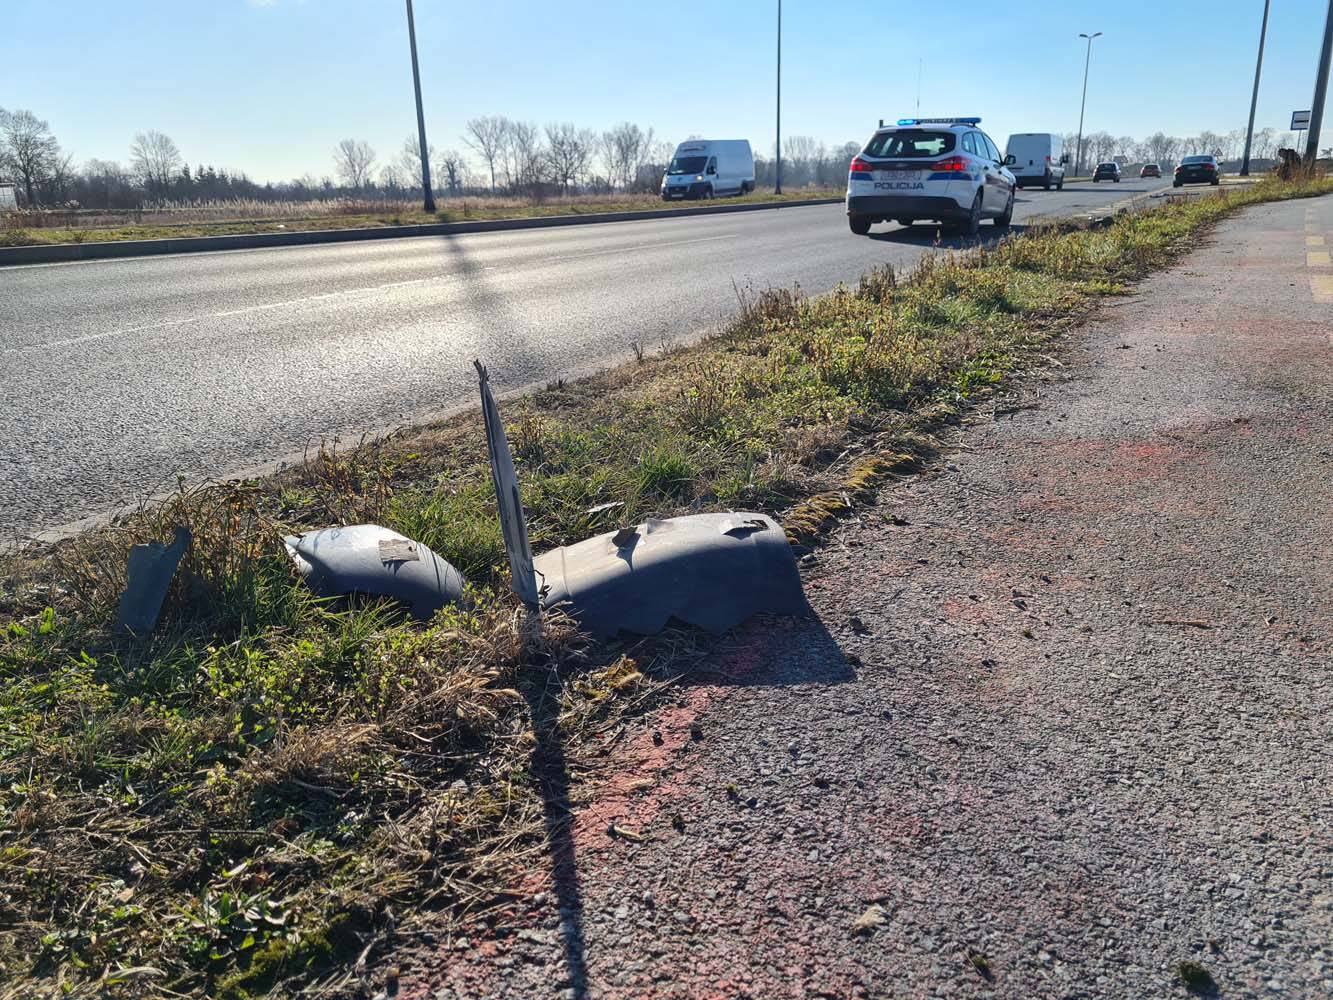 Detalji nesreće kod V. Gorice: Vozačica (77) udarila u znak pa u krivom smjeru vozila 1,2 km!